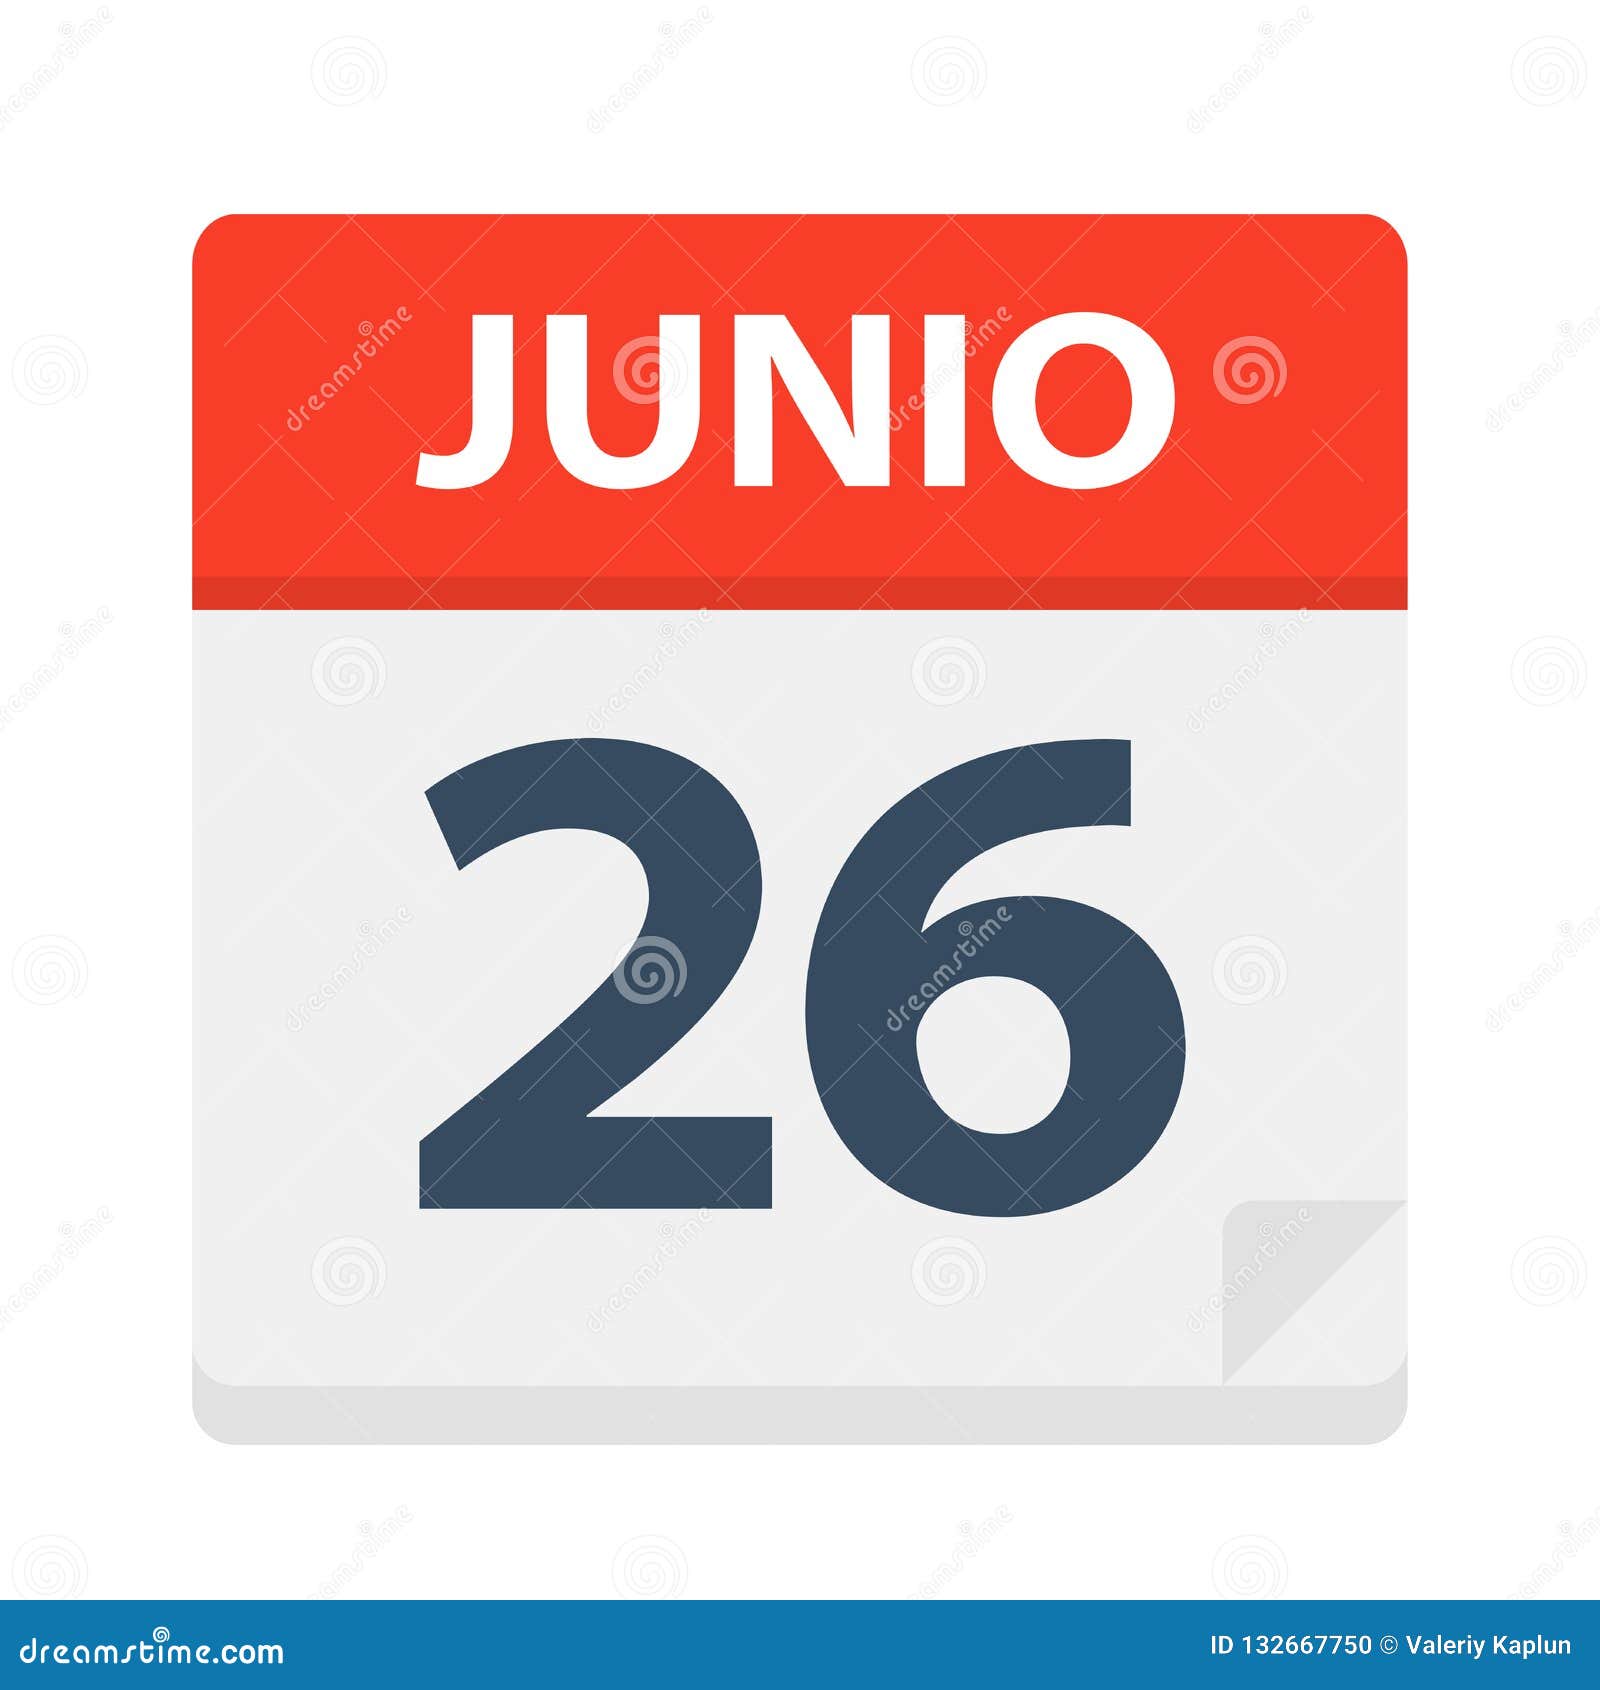 junio 26 - calendar icon - june 26.   of spanish calendar leaf